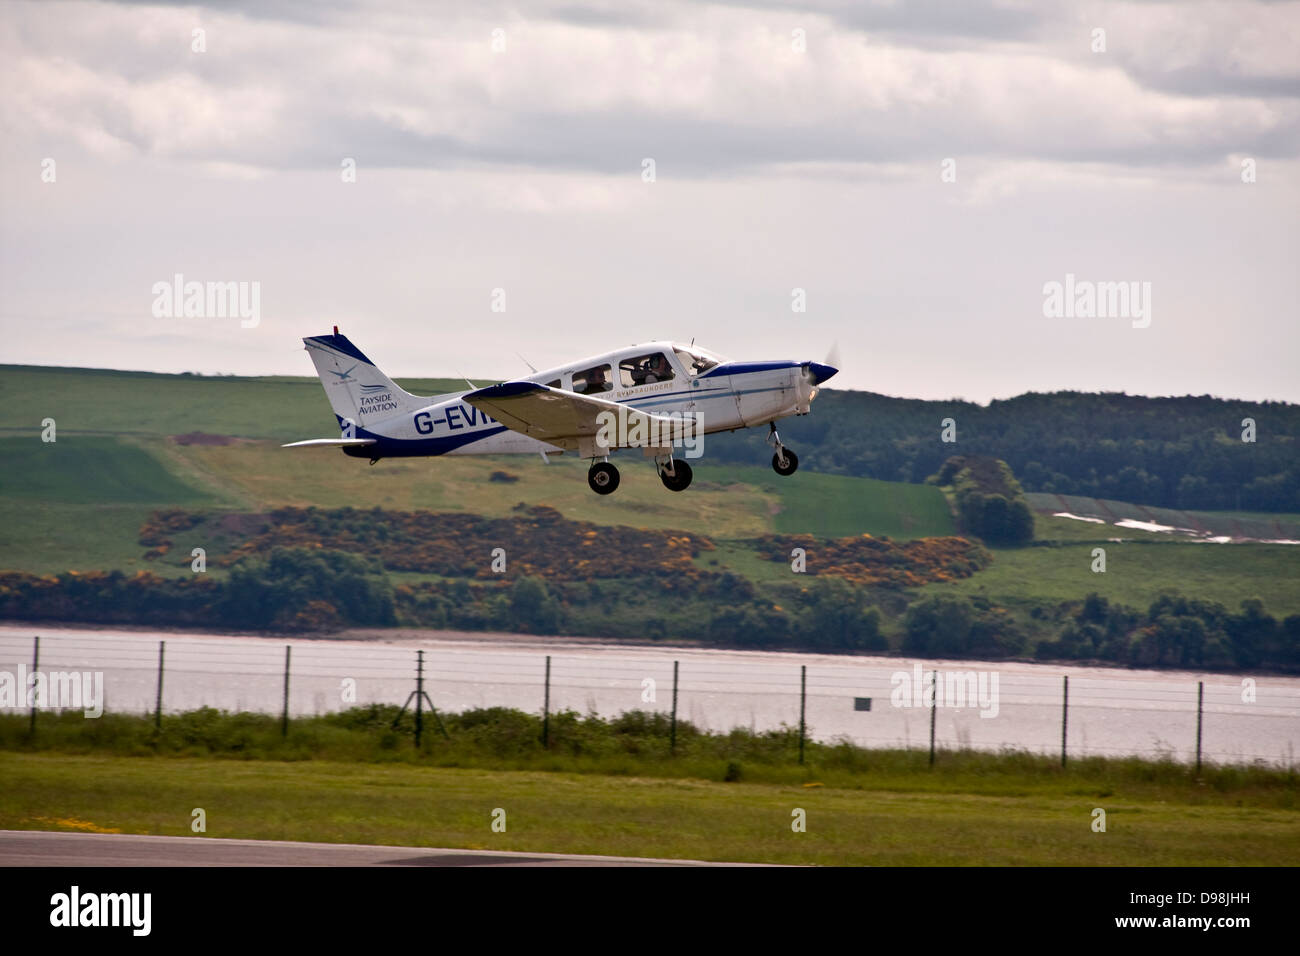 L'Aviation Tayside Piper PA-28 Warrior G-EVIE light décollant monoplan de l'aéroport de Dundee, Royaume-Uni Banque D'Images